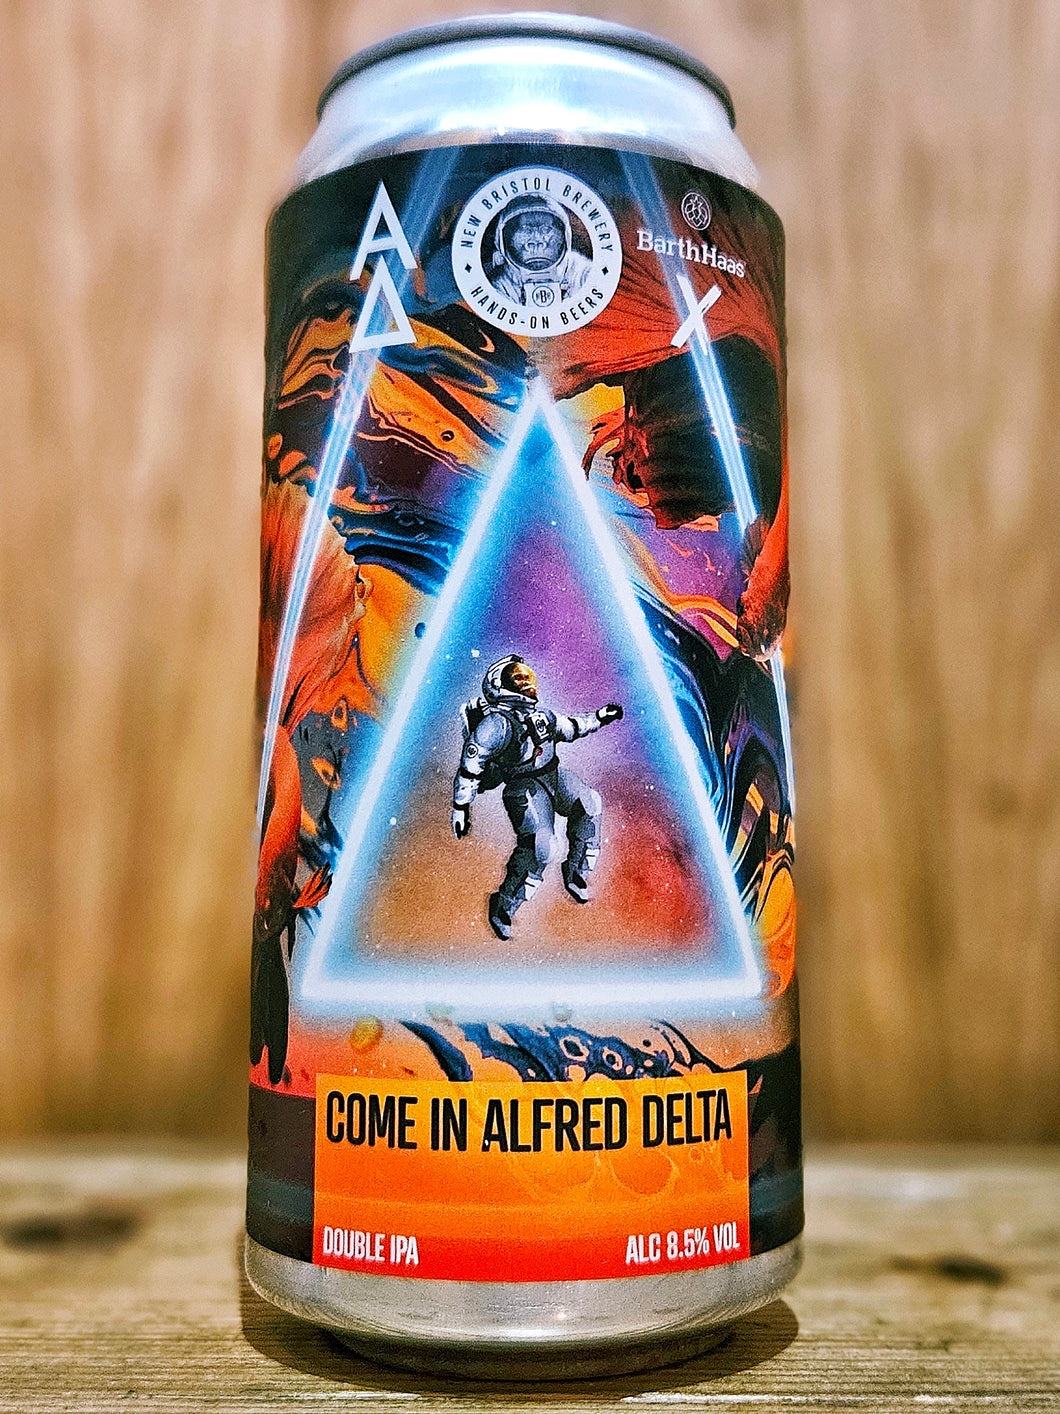 New Bristol Brewing Co v Alpha Delta - Come In Alfred Delta